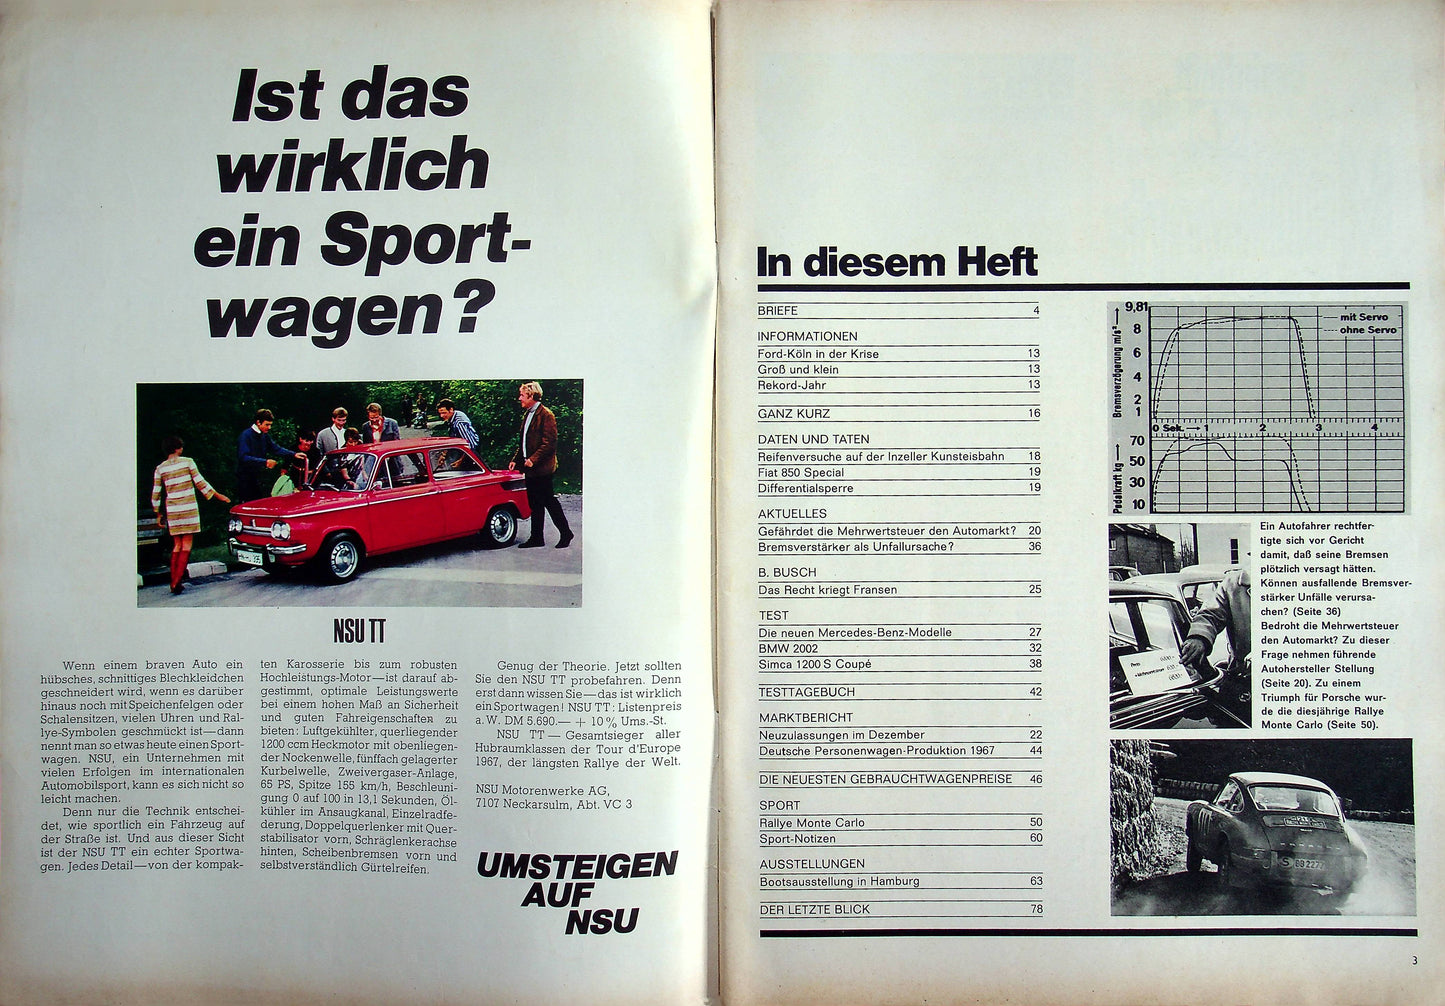 Auto Motor und Sport 04/1968